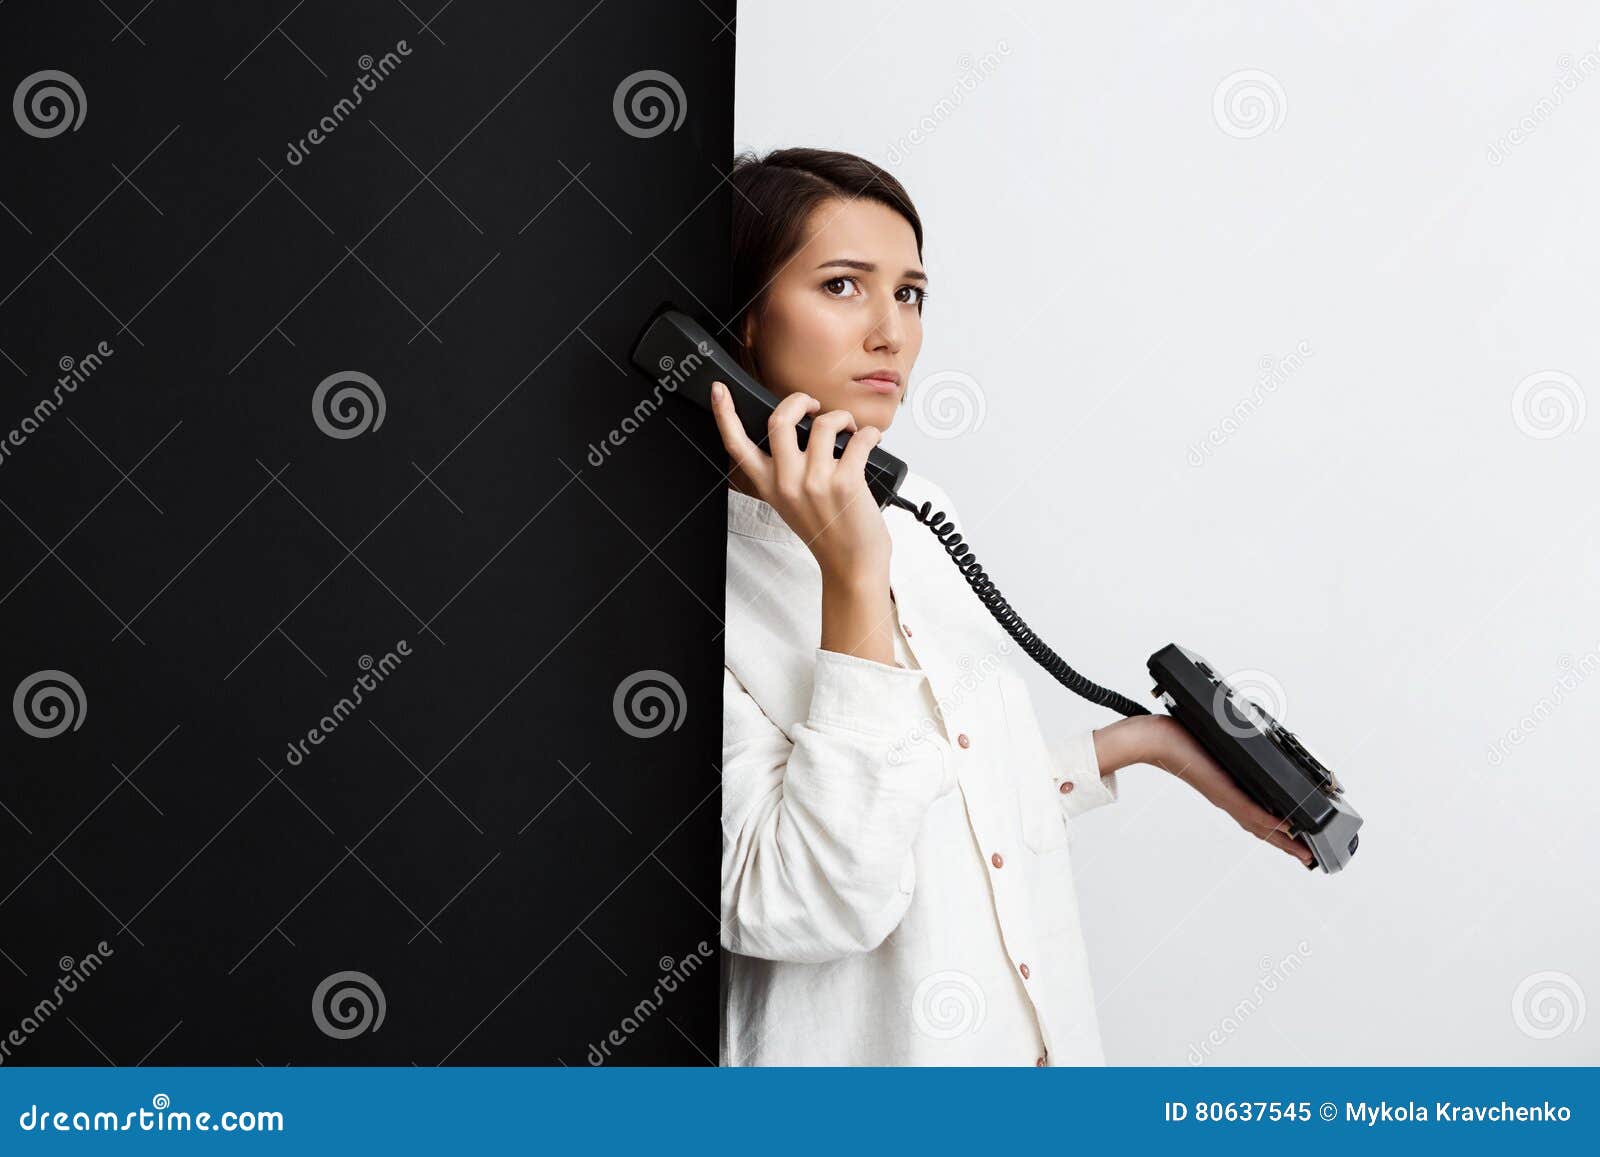 Контроль над телефоном. Девушка с трубкой телефона арт. Девушка говорящая по старинному телефону.